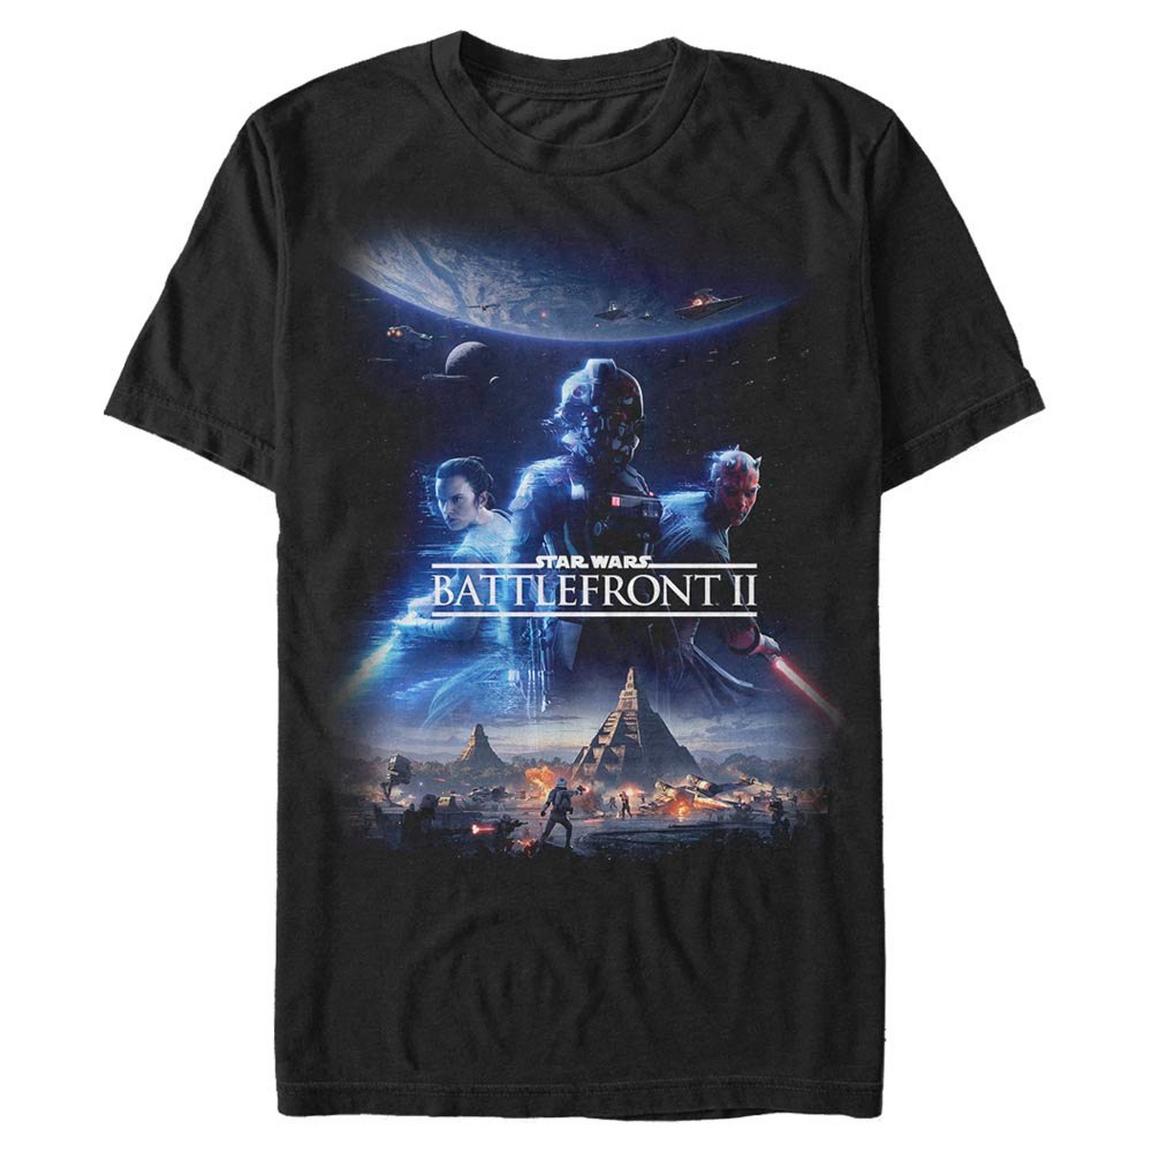 Star Wars Battlefront II Poster T-Shirt, Size: Medium, Fifth Sun